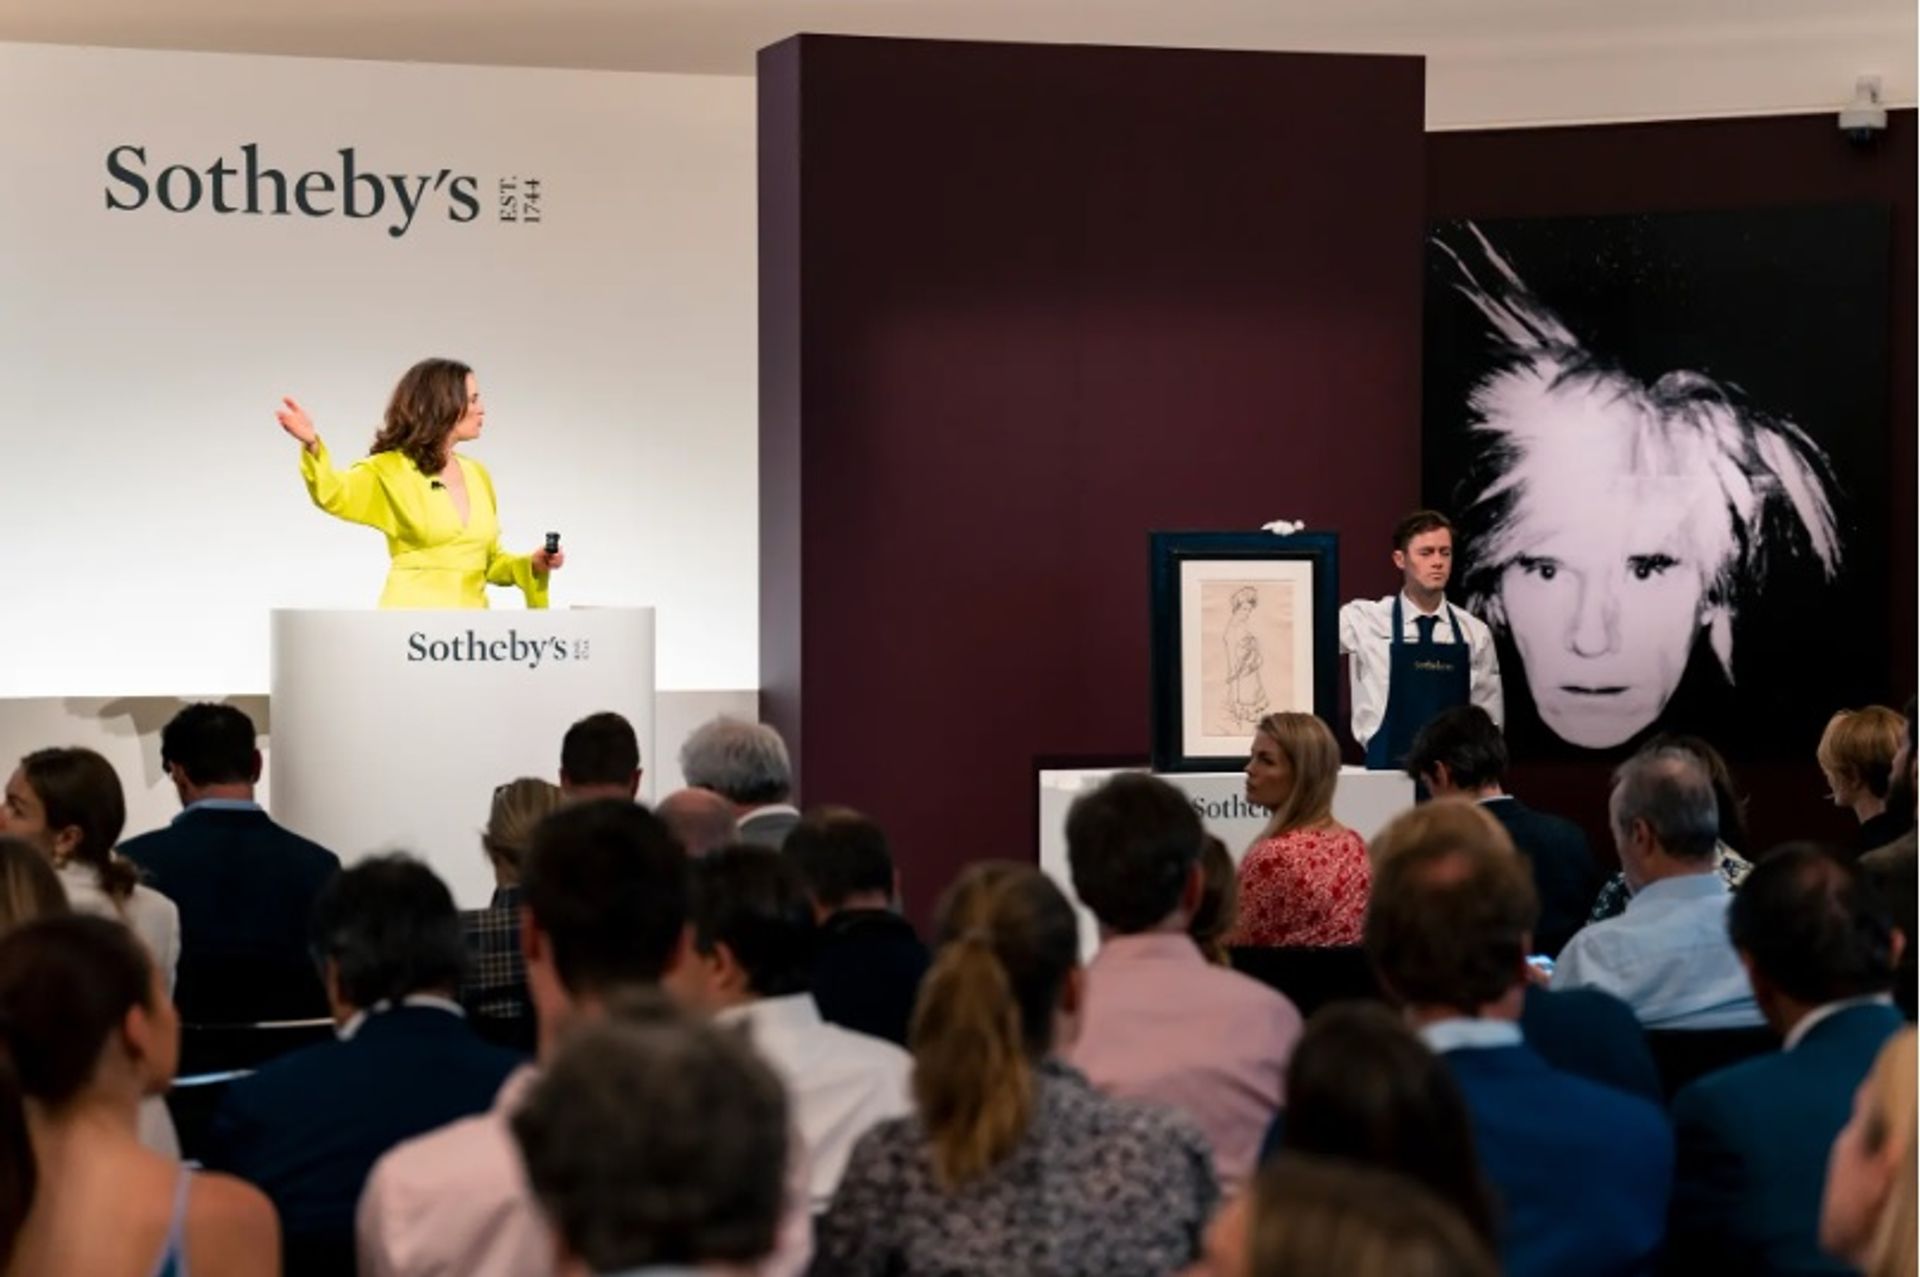 הלנה ניומן הגישה את מכירת האמנות המודרנית והעכשווית שלסותבי'ס ביום רביעי האחרון.

באדיבות, סותבי'ס